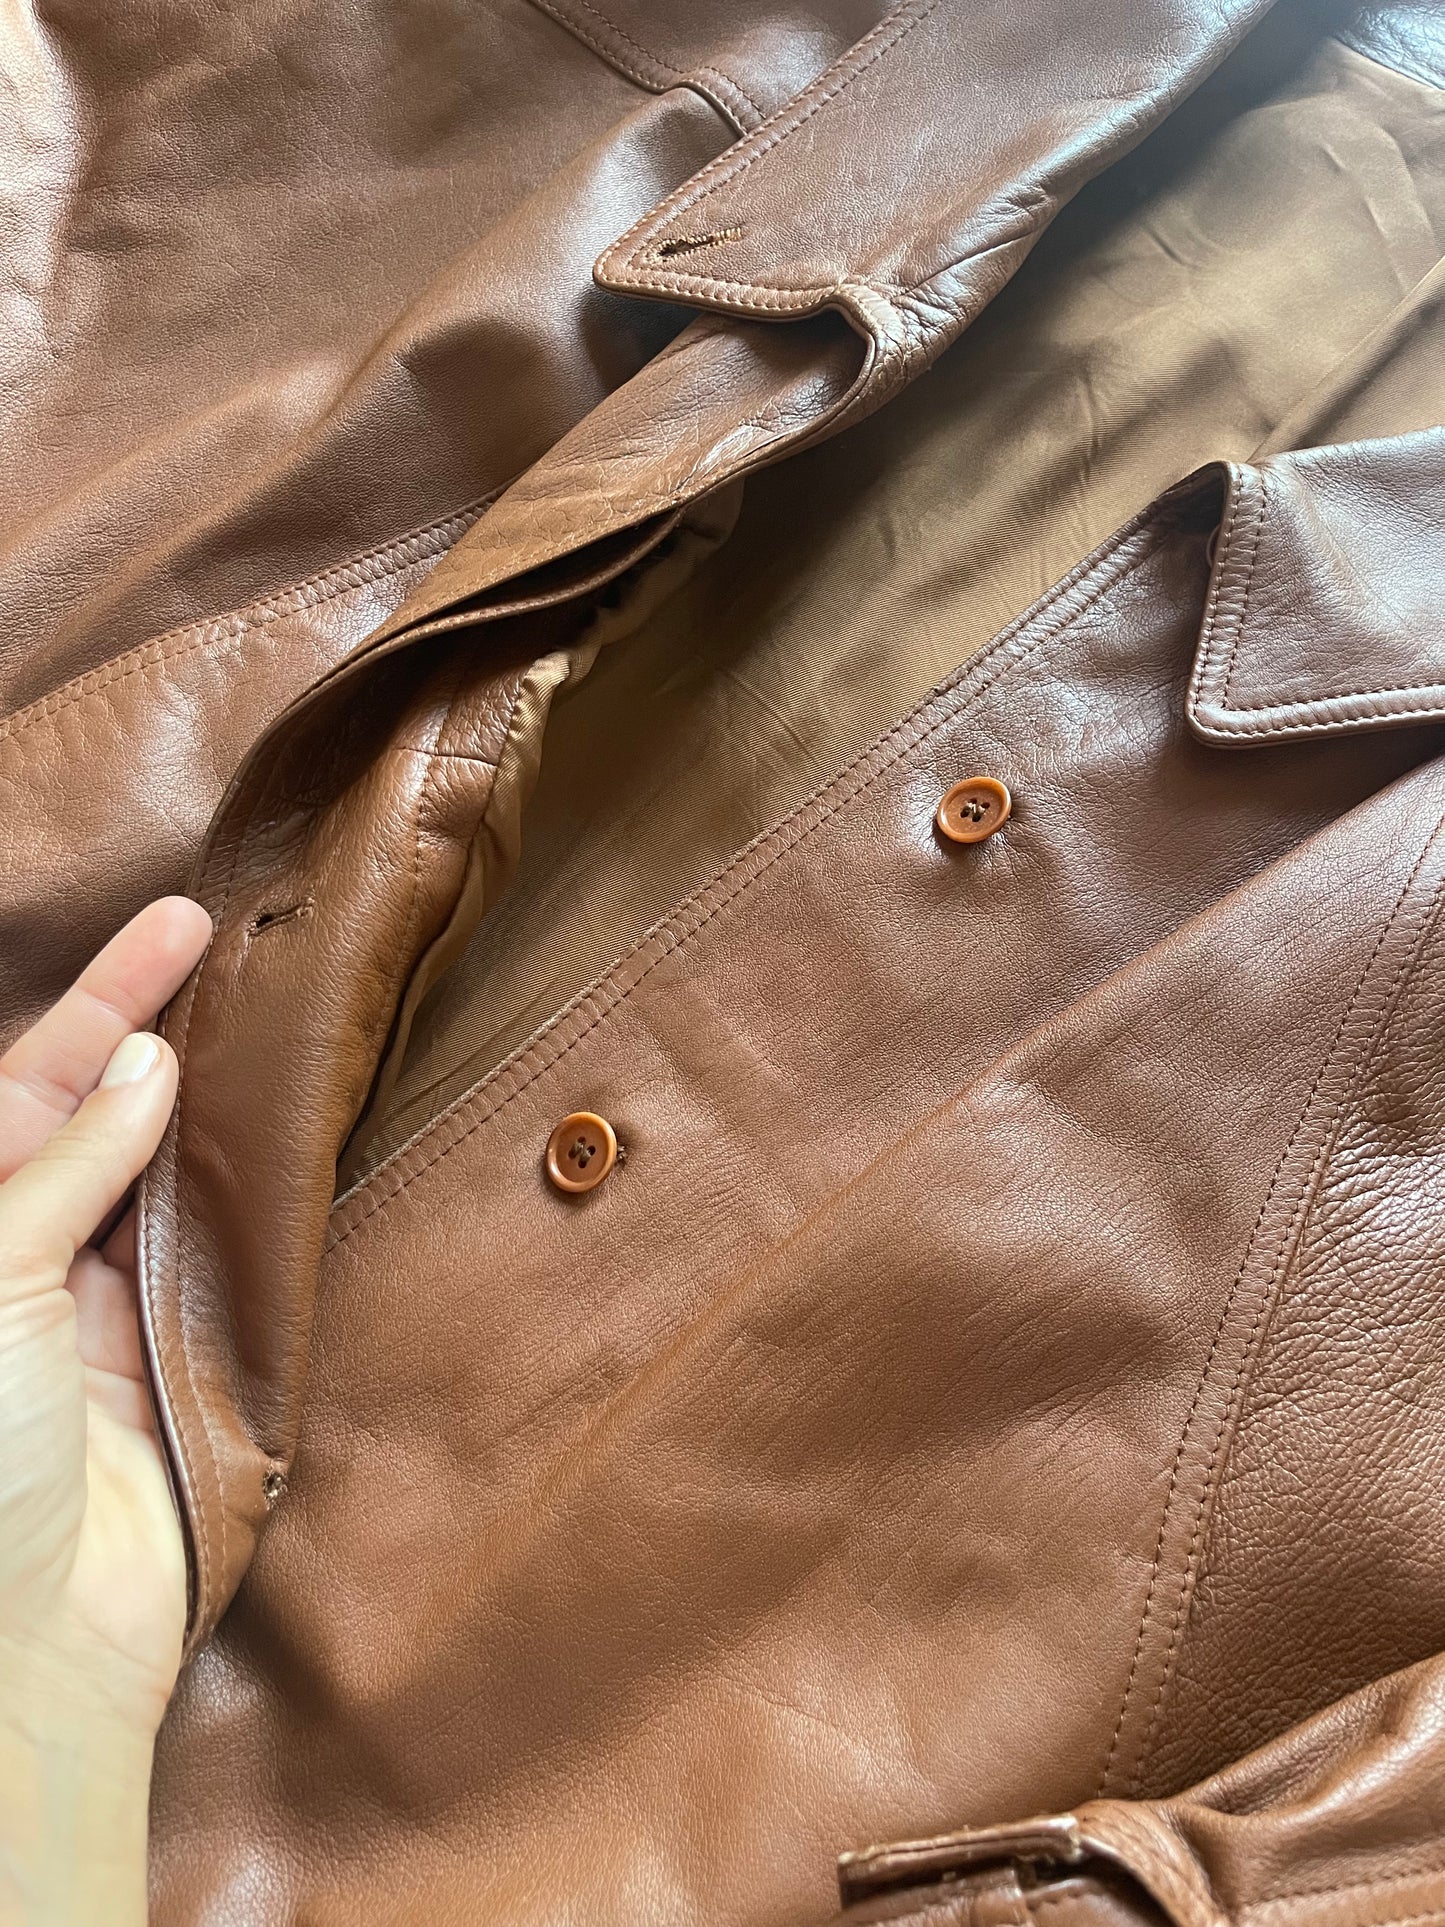 Caramello leather jacket